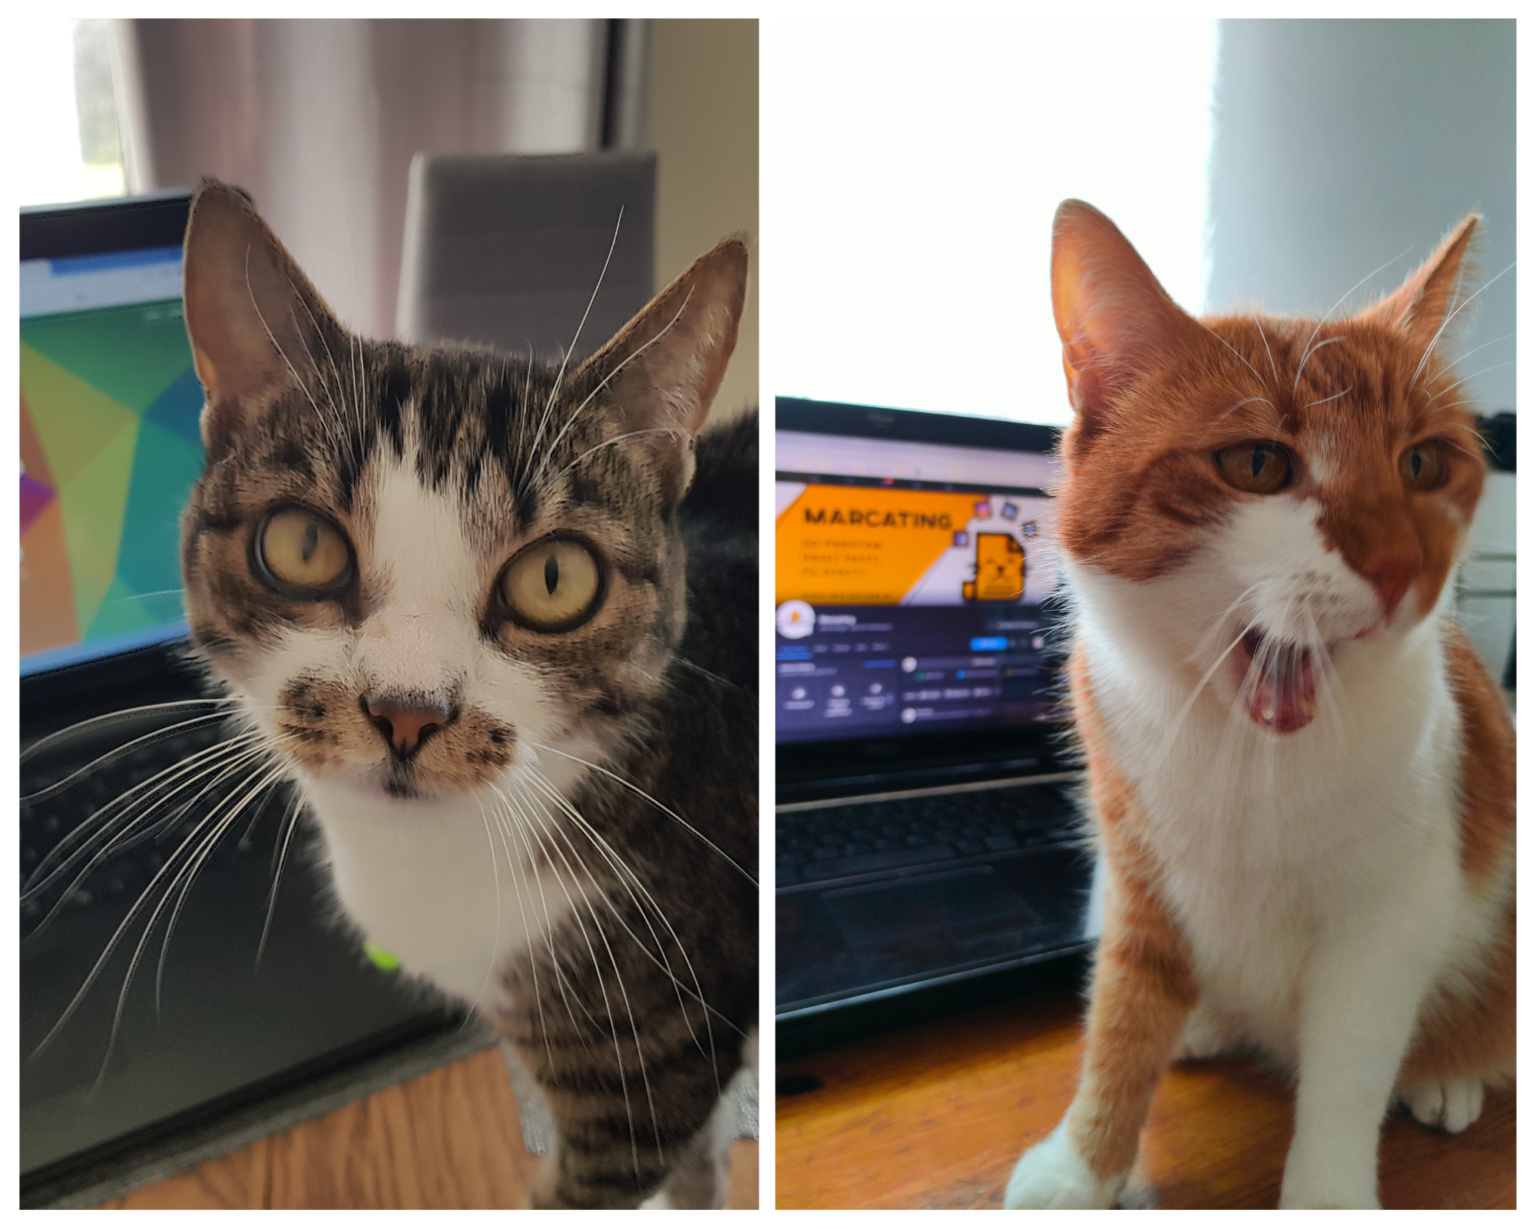 Agencja marketingowa w Rzeszowie | Zdjęcie przedstawia kolaż - po lewej stronie znajduje się kot o imieniu Mała Mi, a po prawej kot o imieniu Karmel. Oba koty stoją przy laptopach, bo ciężko na nich pracują.